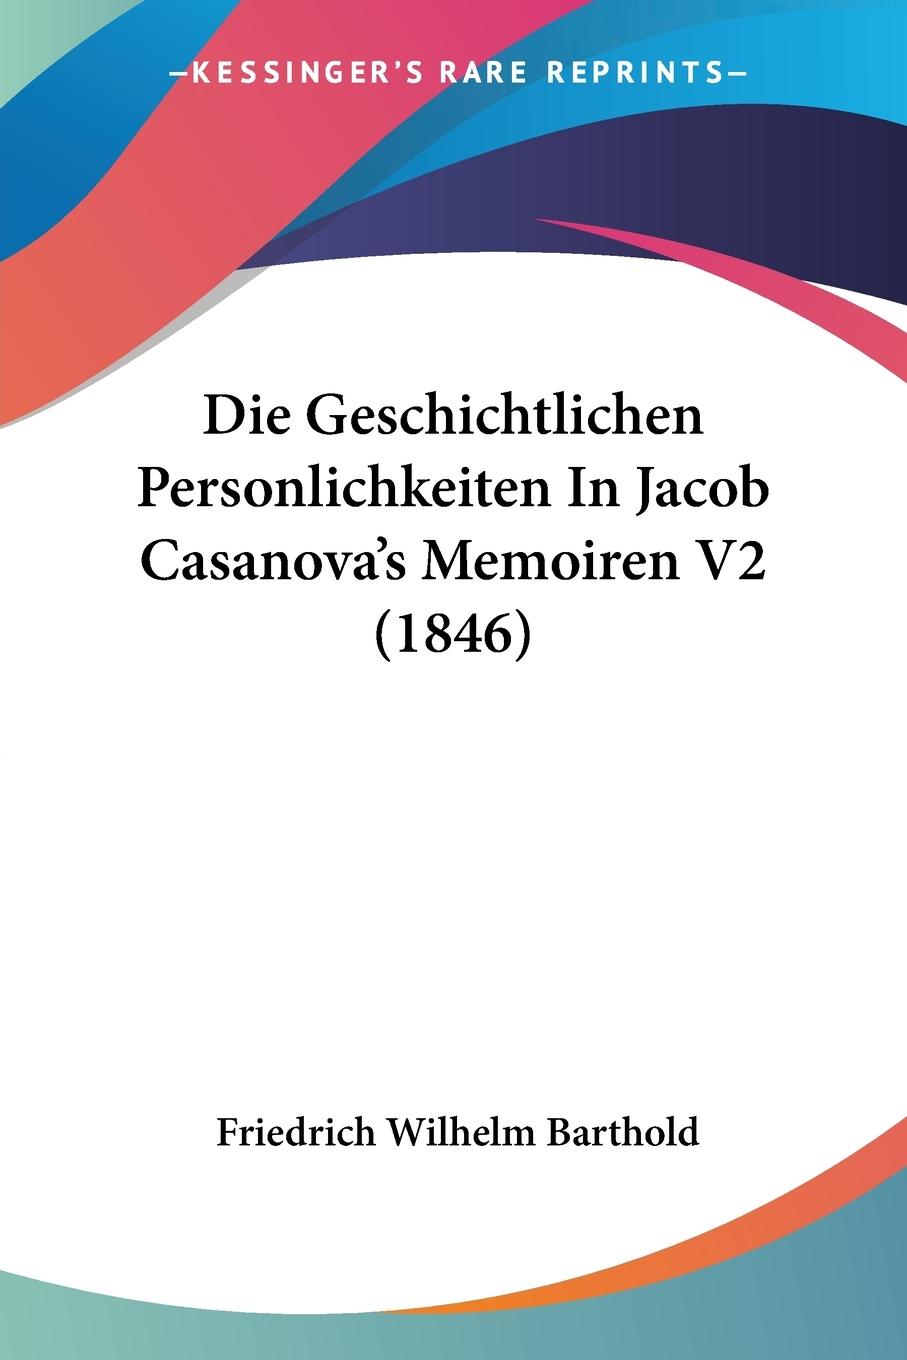 Die Geschichtlichen Personlichkeiten In Jacob Casanova s Memoiren V2 (1846) - Barthold, Friedrich Wilhelm